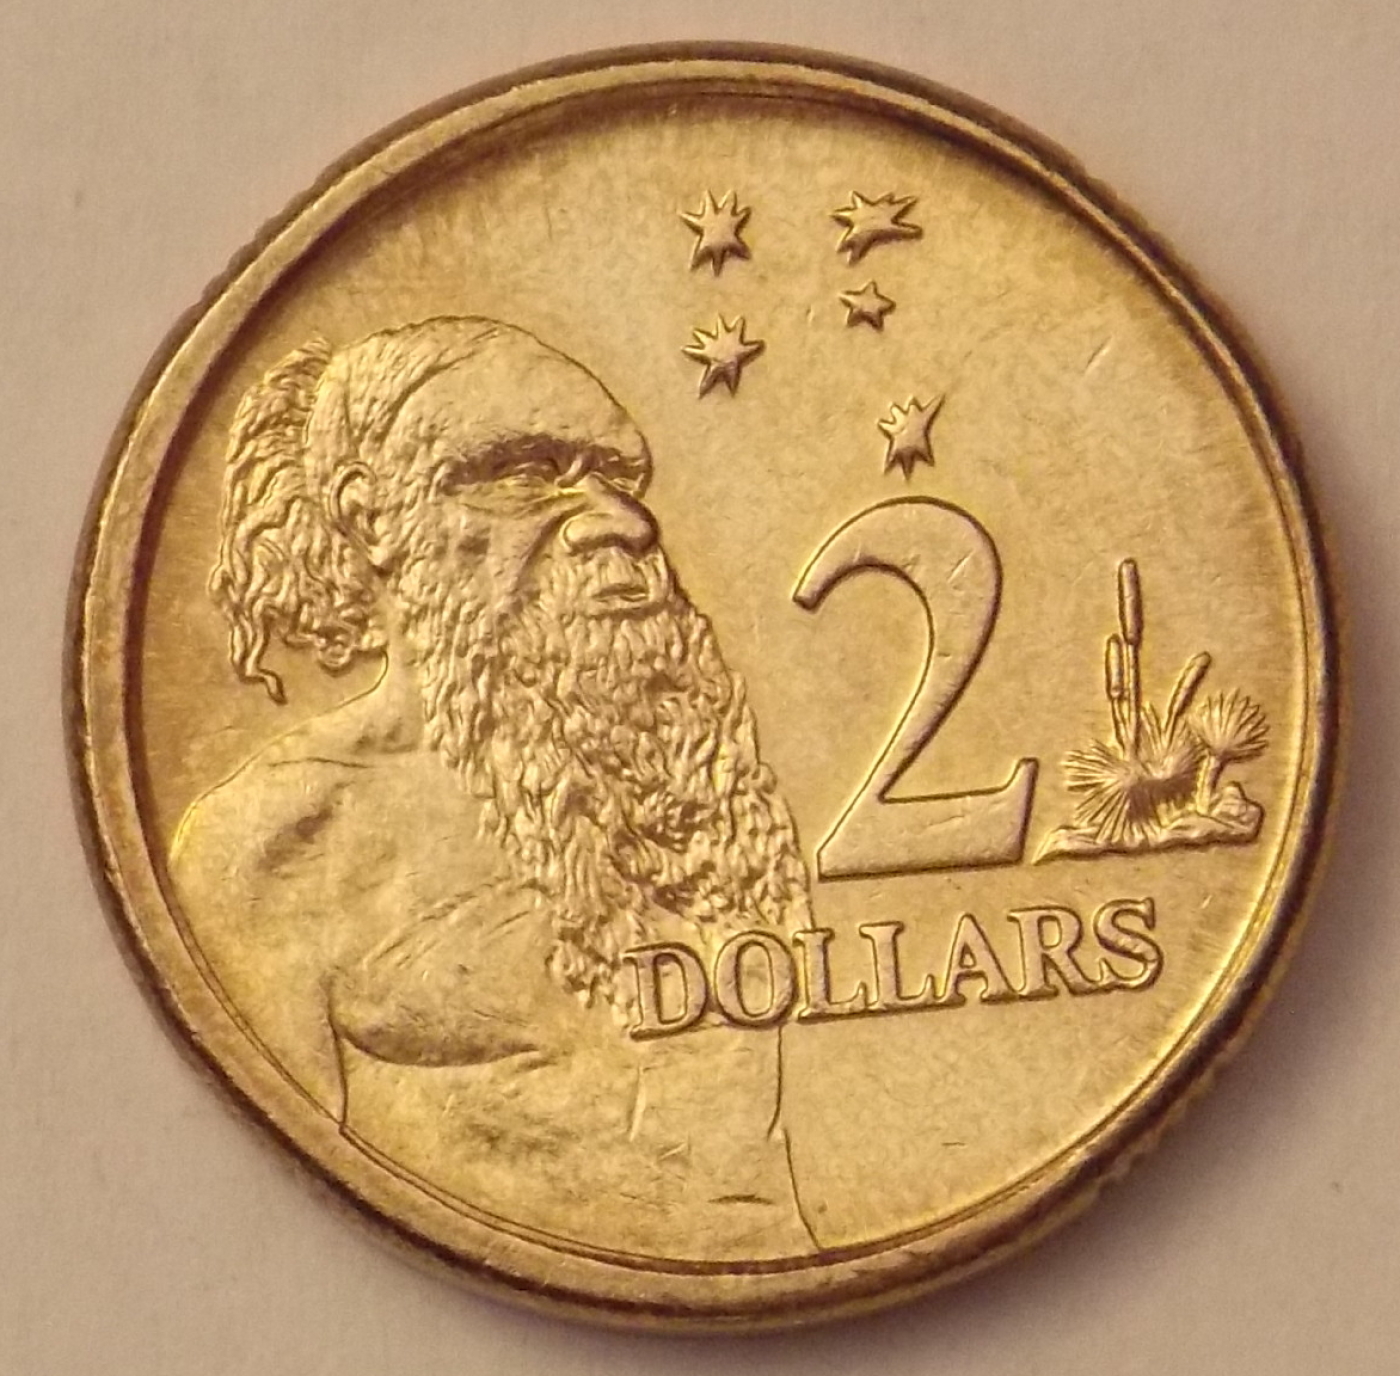 dollar coins worth money